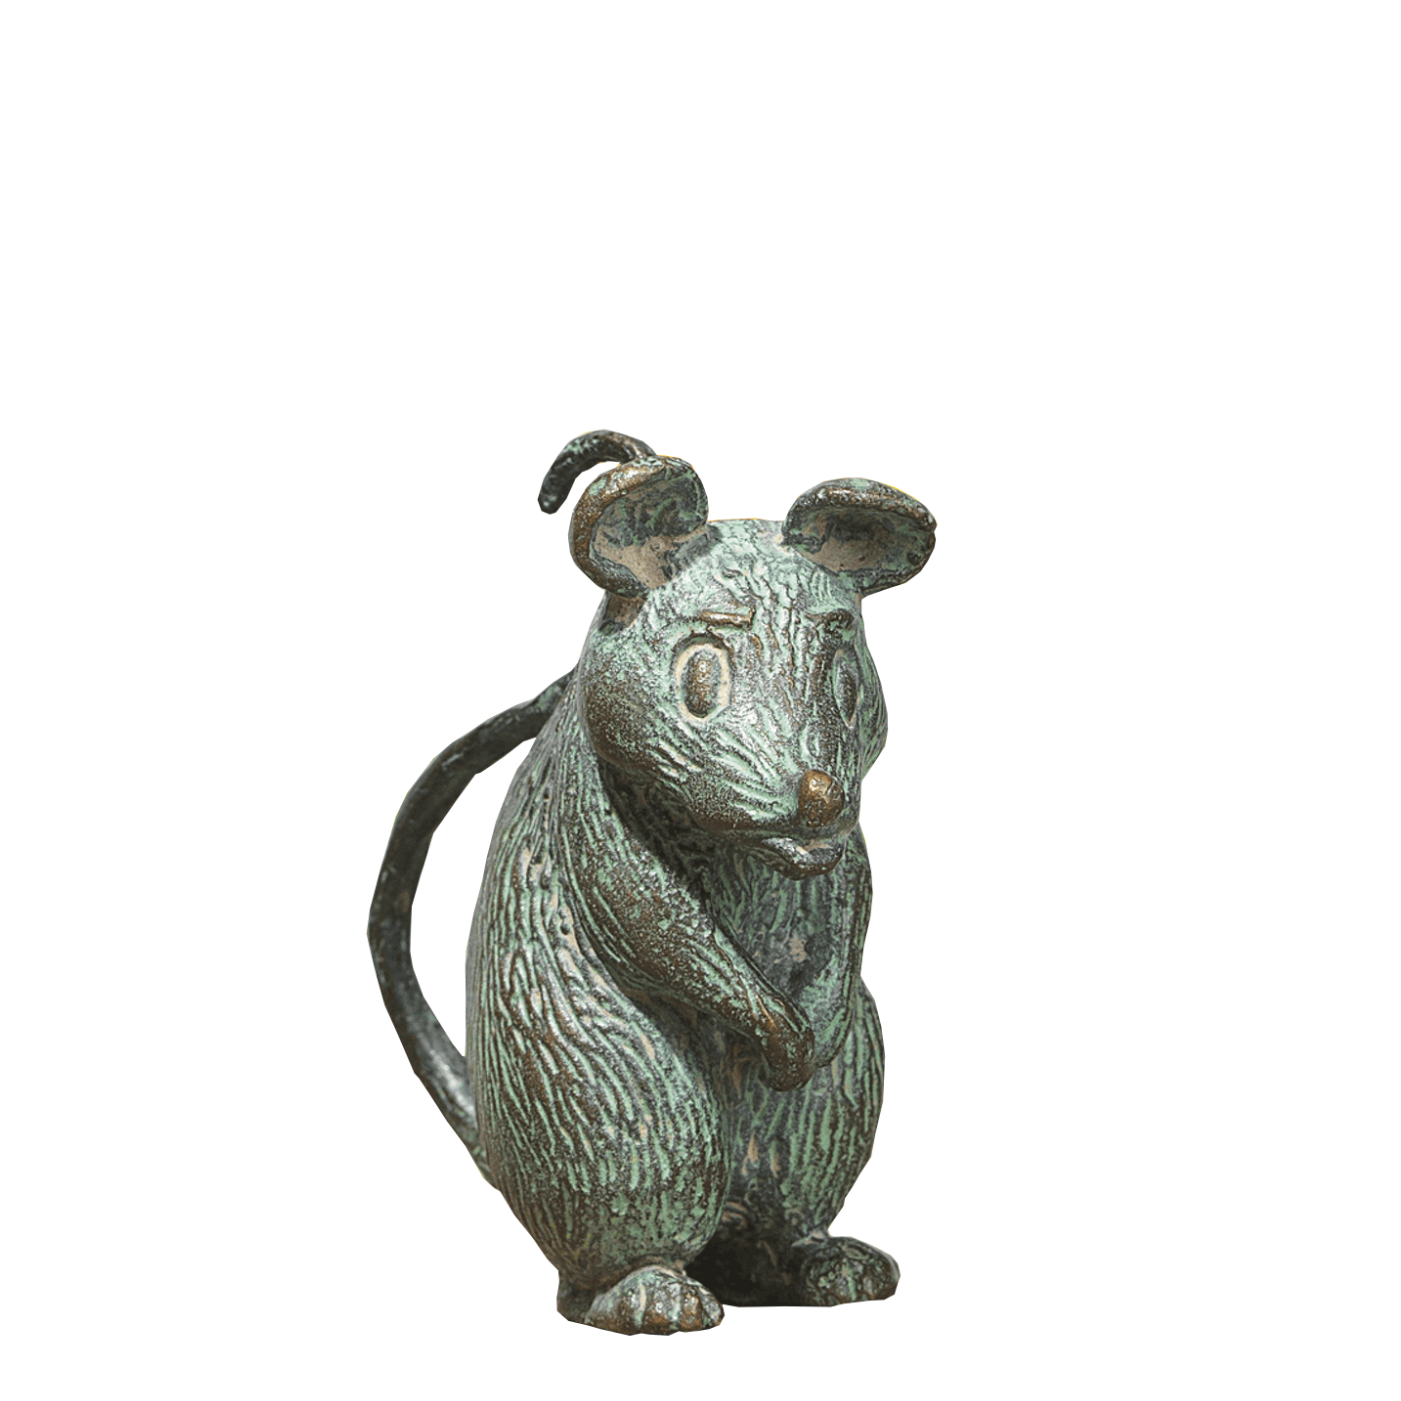 Details about   Kinder Tier Spielzeug Weiße Maus Modell Figuren Pädagogisches 